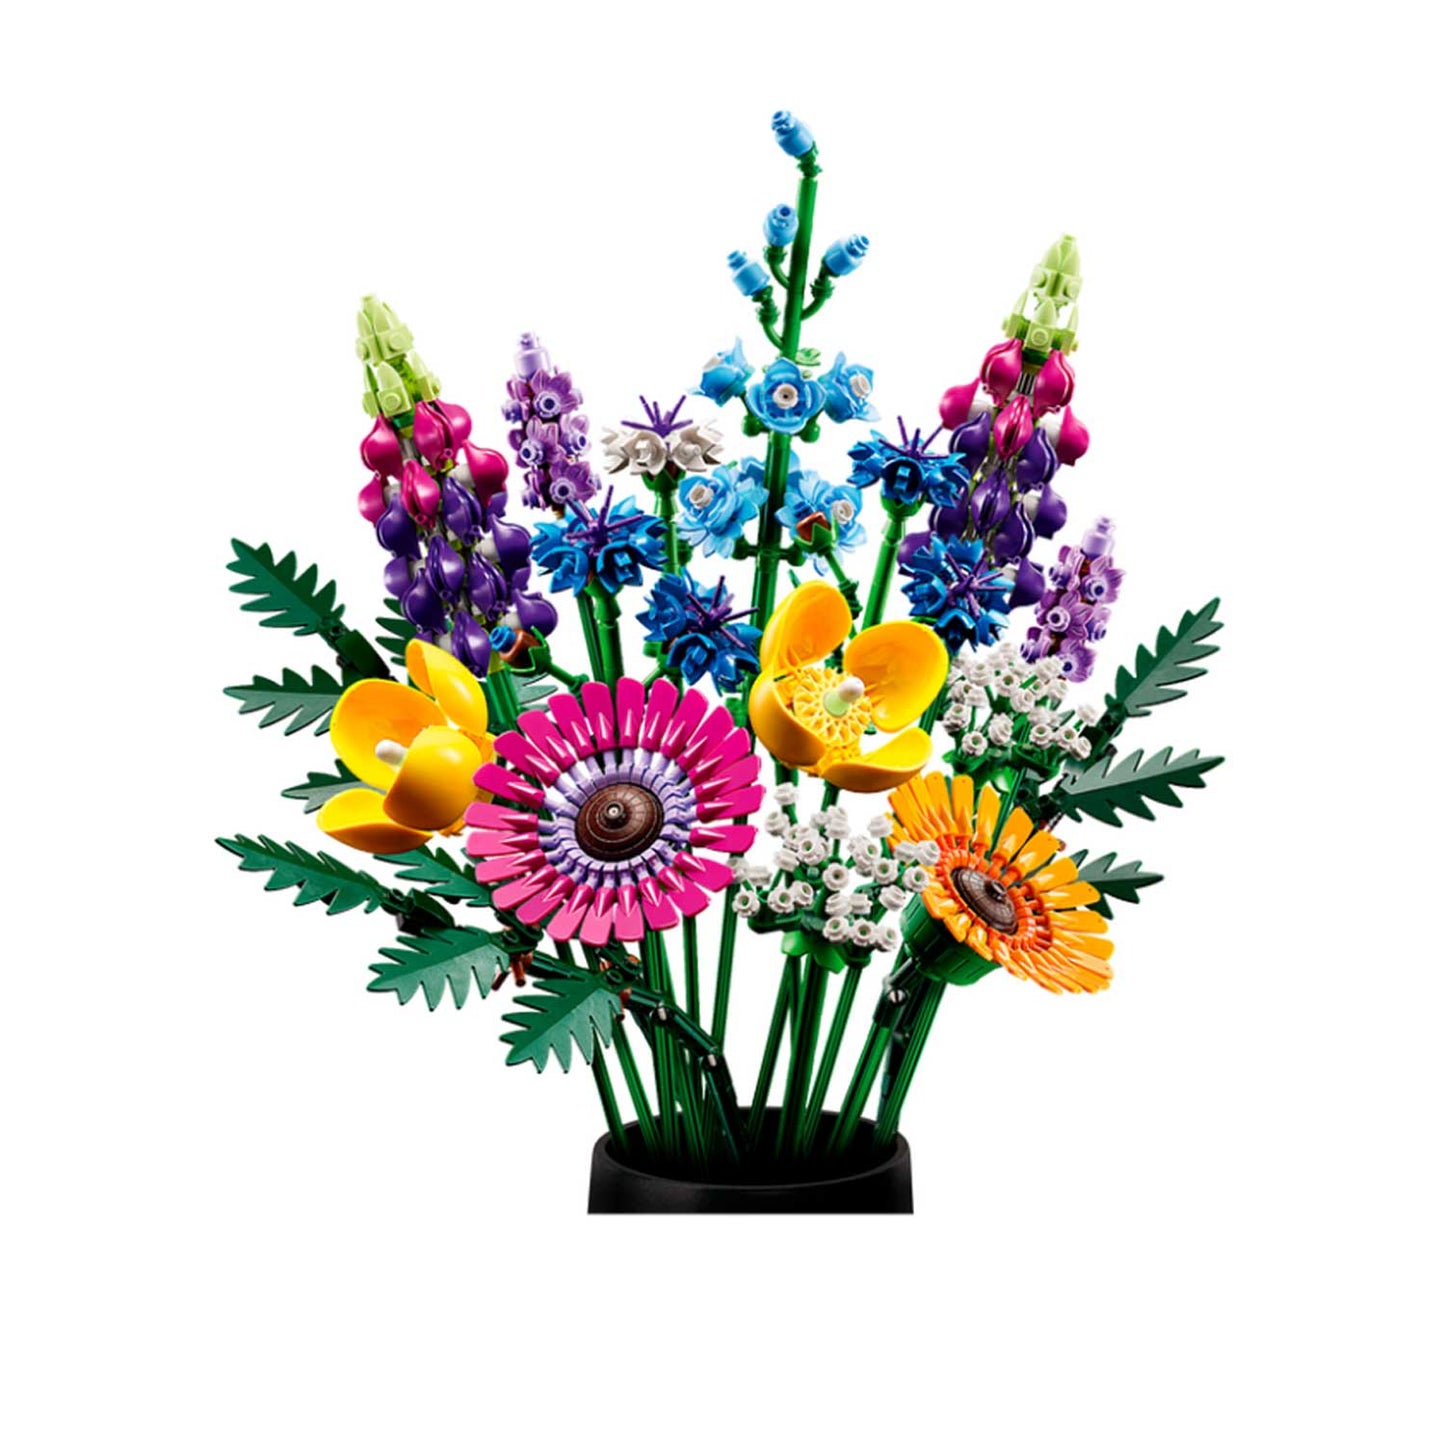 Lego - Icons Bouquet fiori selvatici 10313 – Iperbimbo